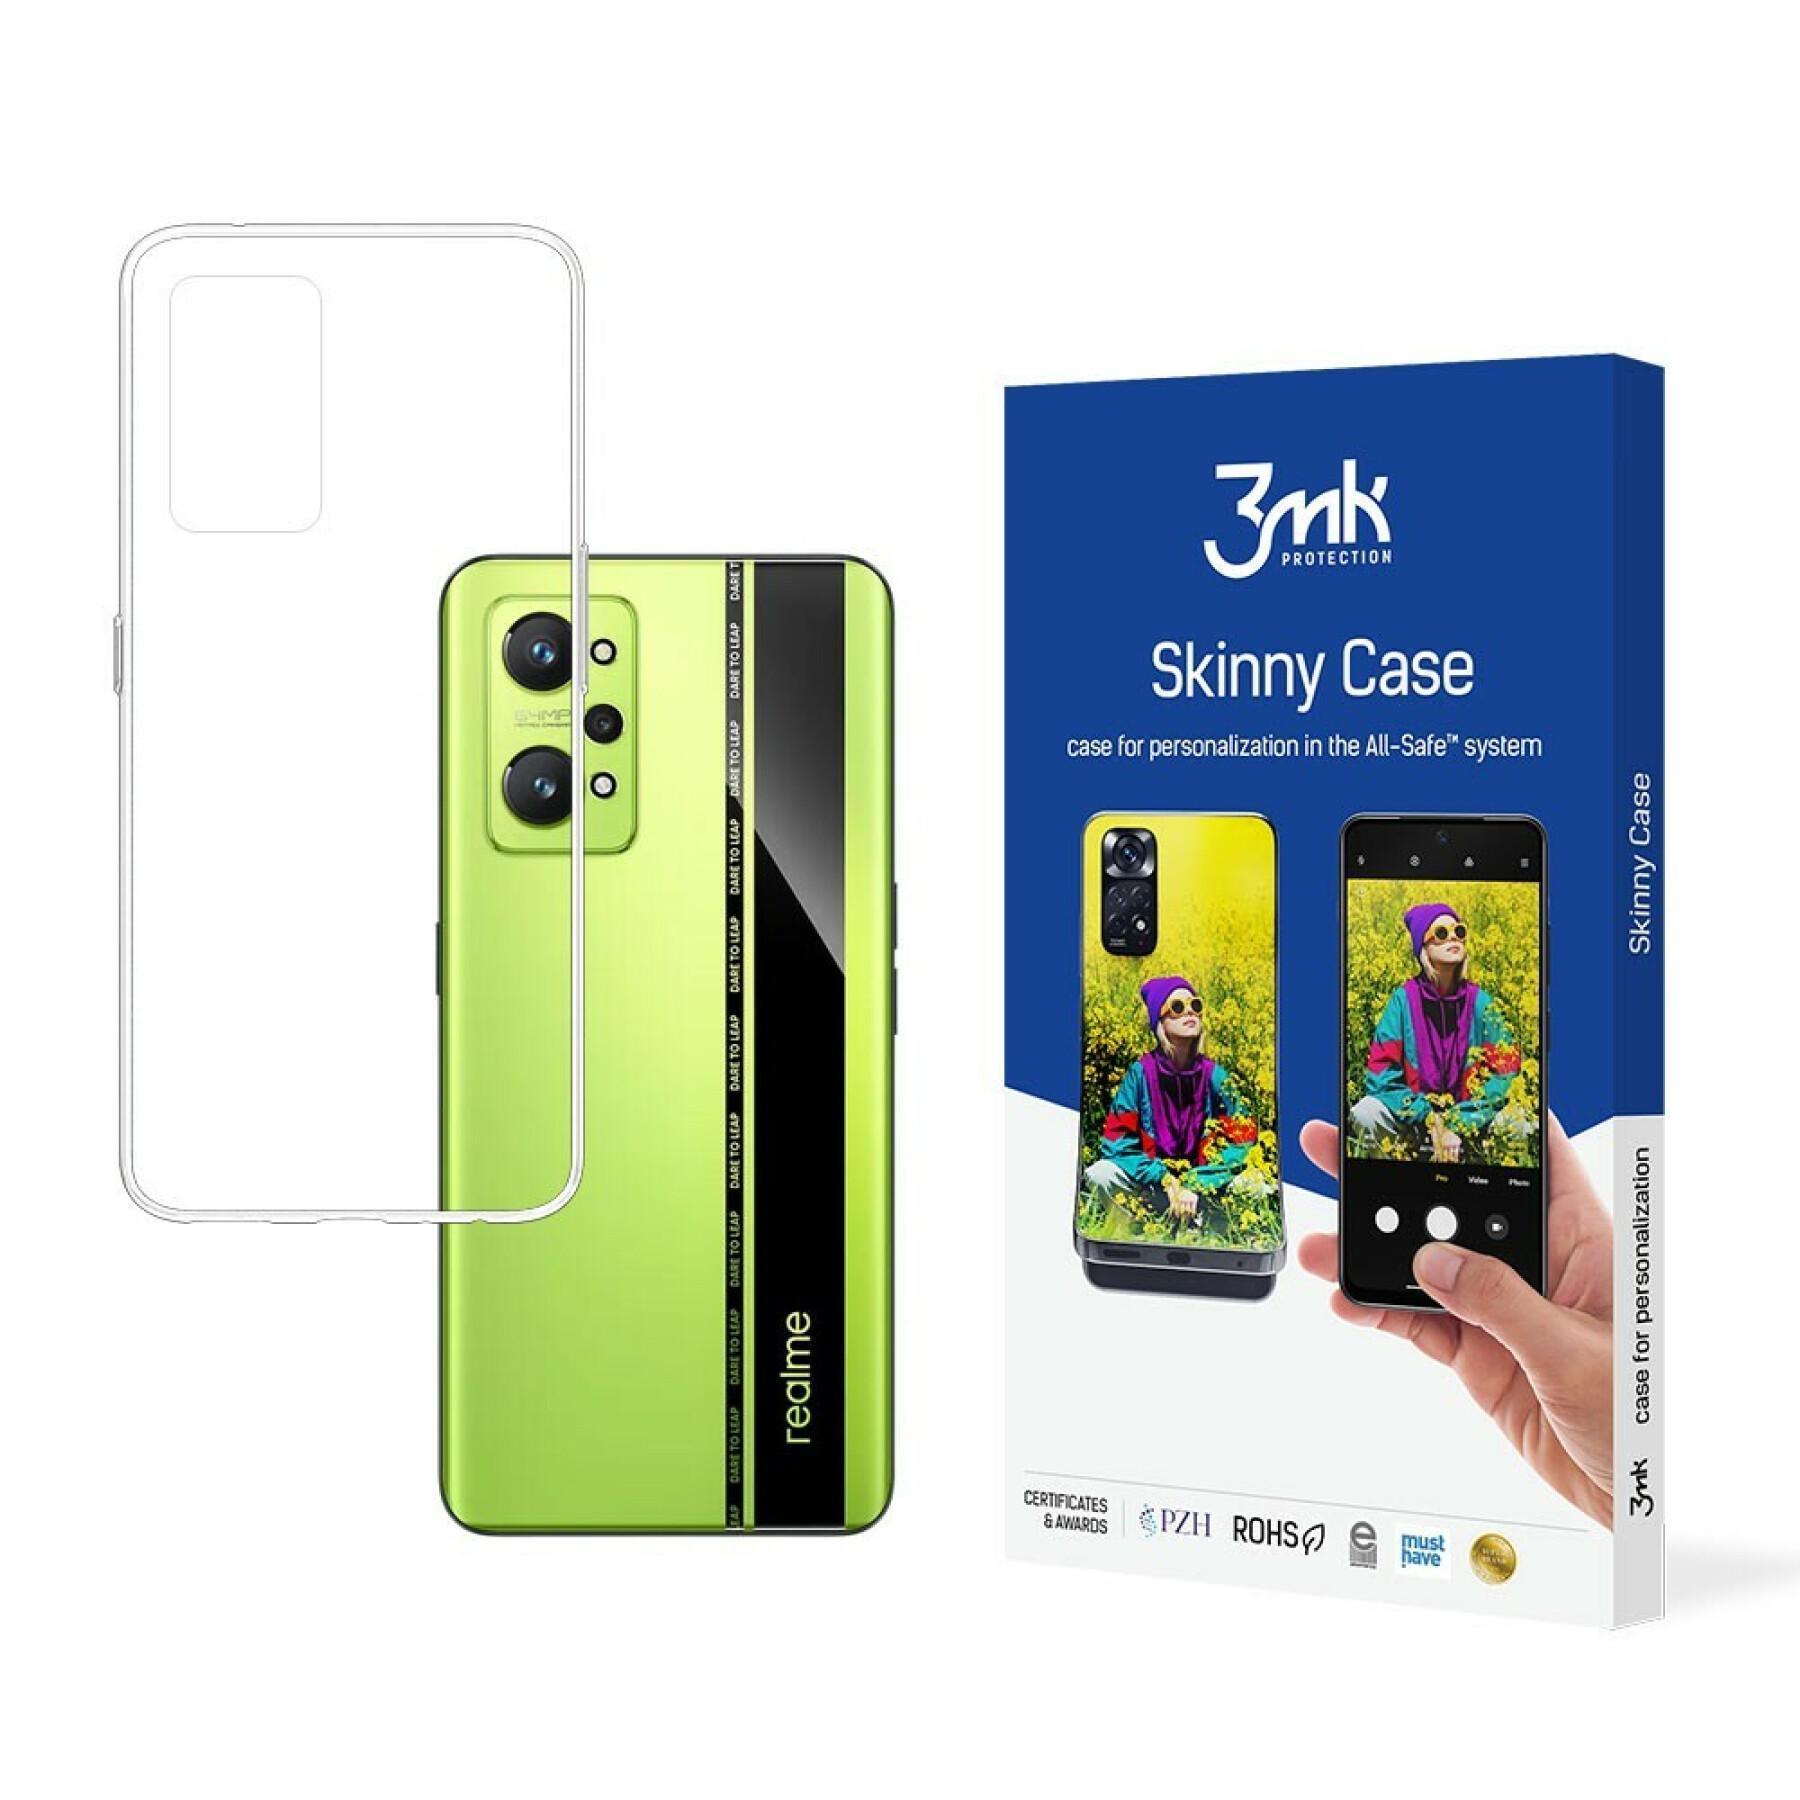 Fodral till smartphone 3MK Realme GT Neo 2 5G Skinny Case